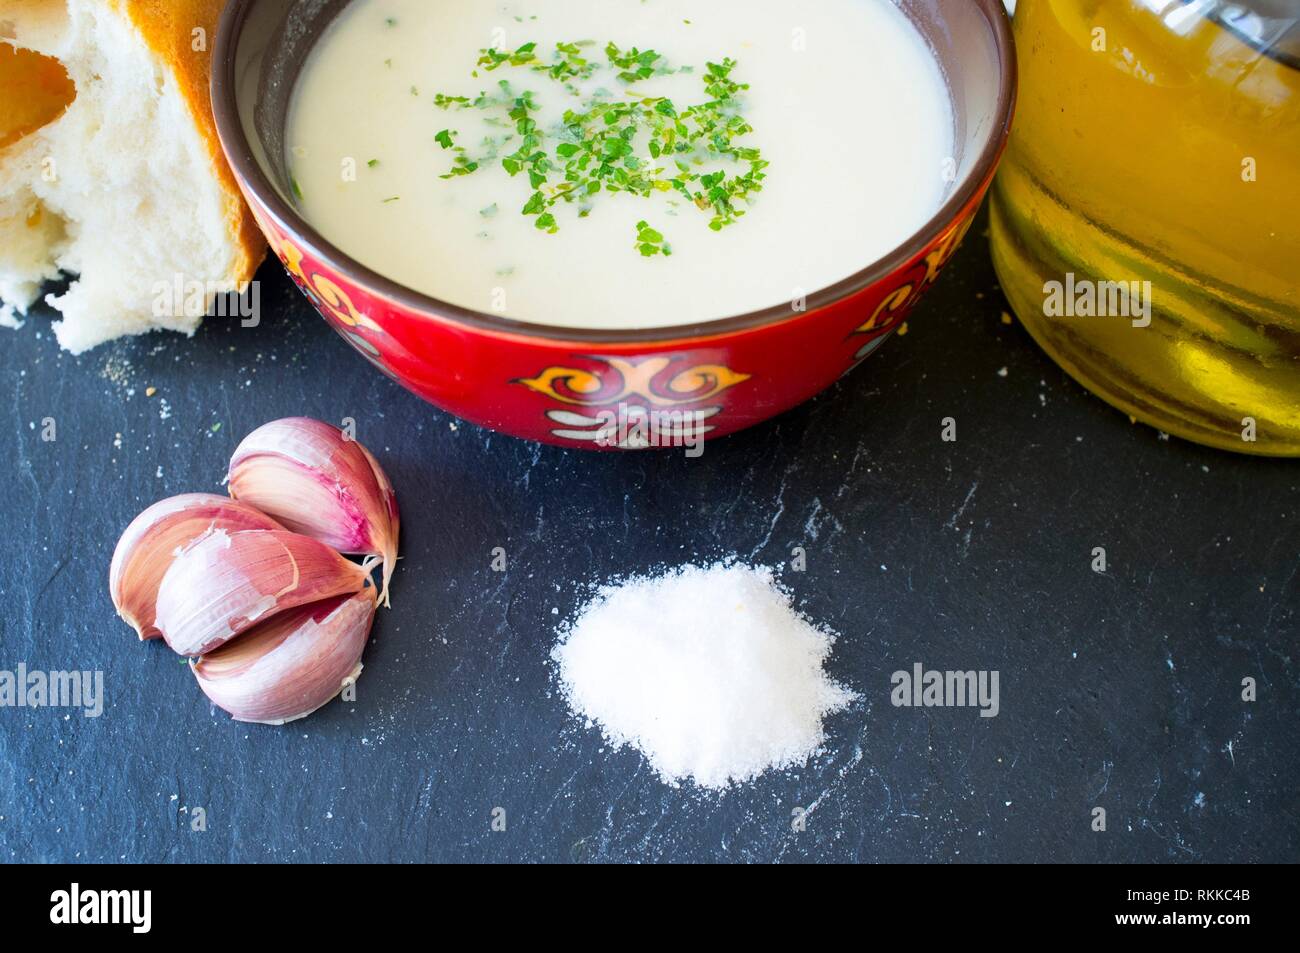 El ajoblanco o el gazpacho blanco, el popular sopa fría desde el sur de España. Foto de stock